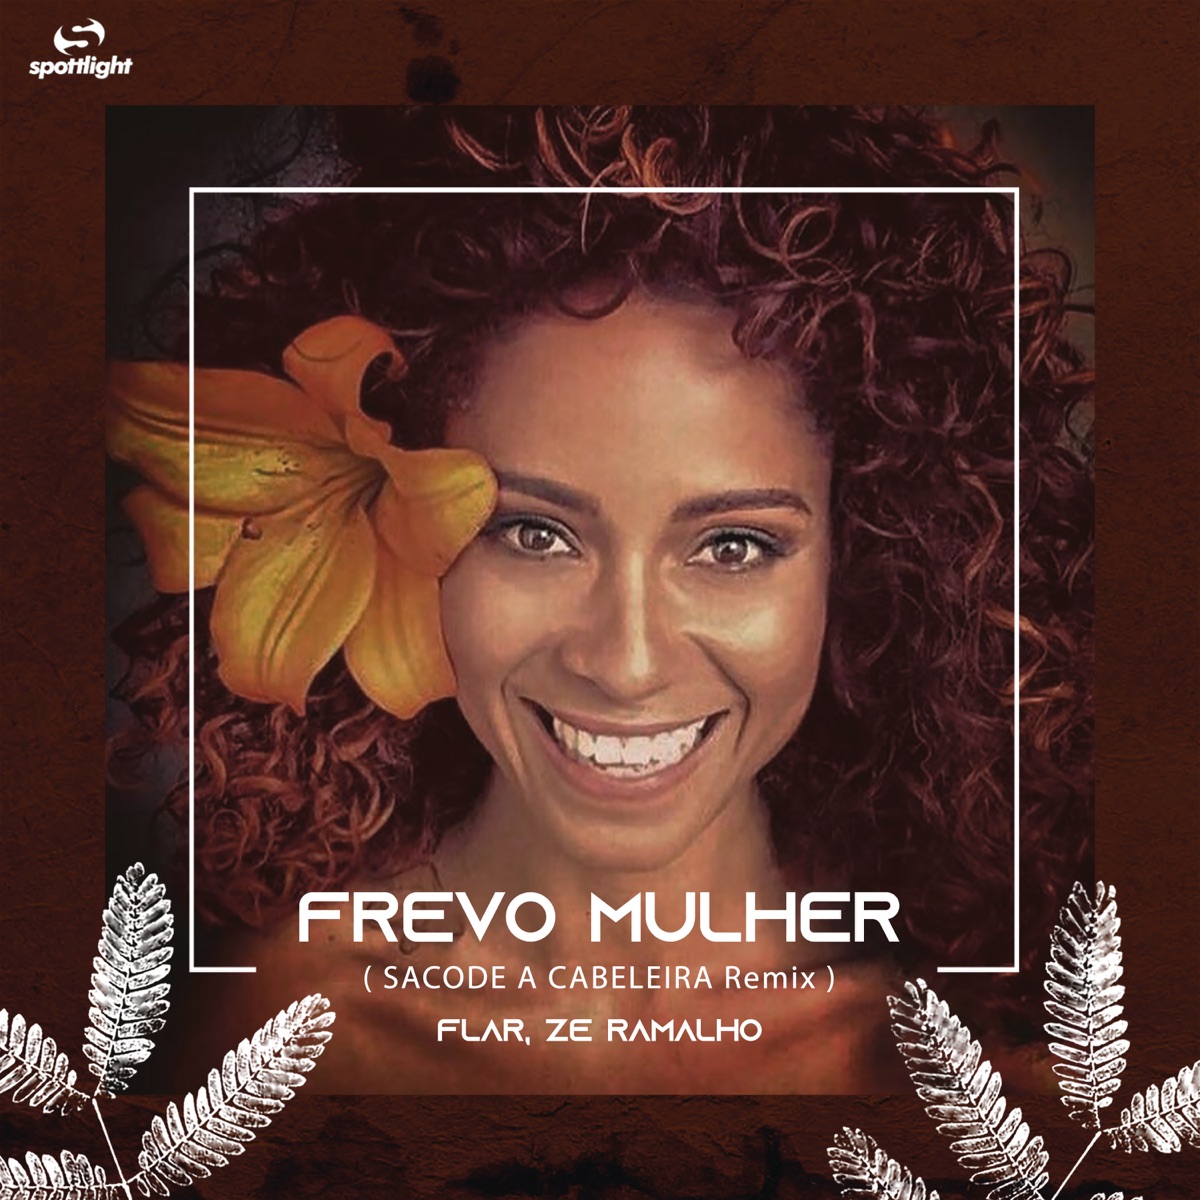 Frevo Mulher (Sacode a Cabeleira Remix) – Song by DJ Flar & Zé